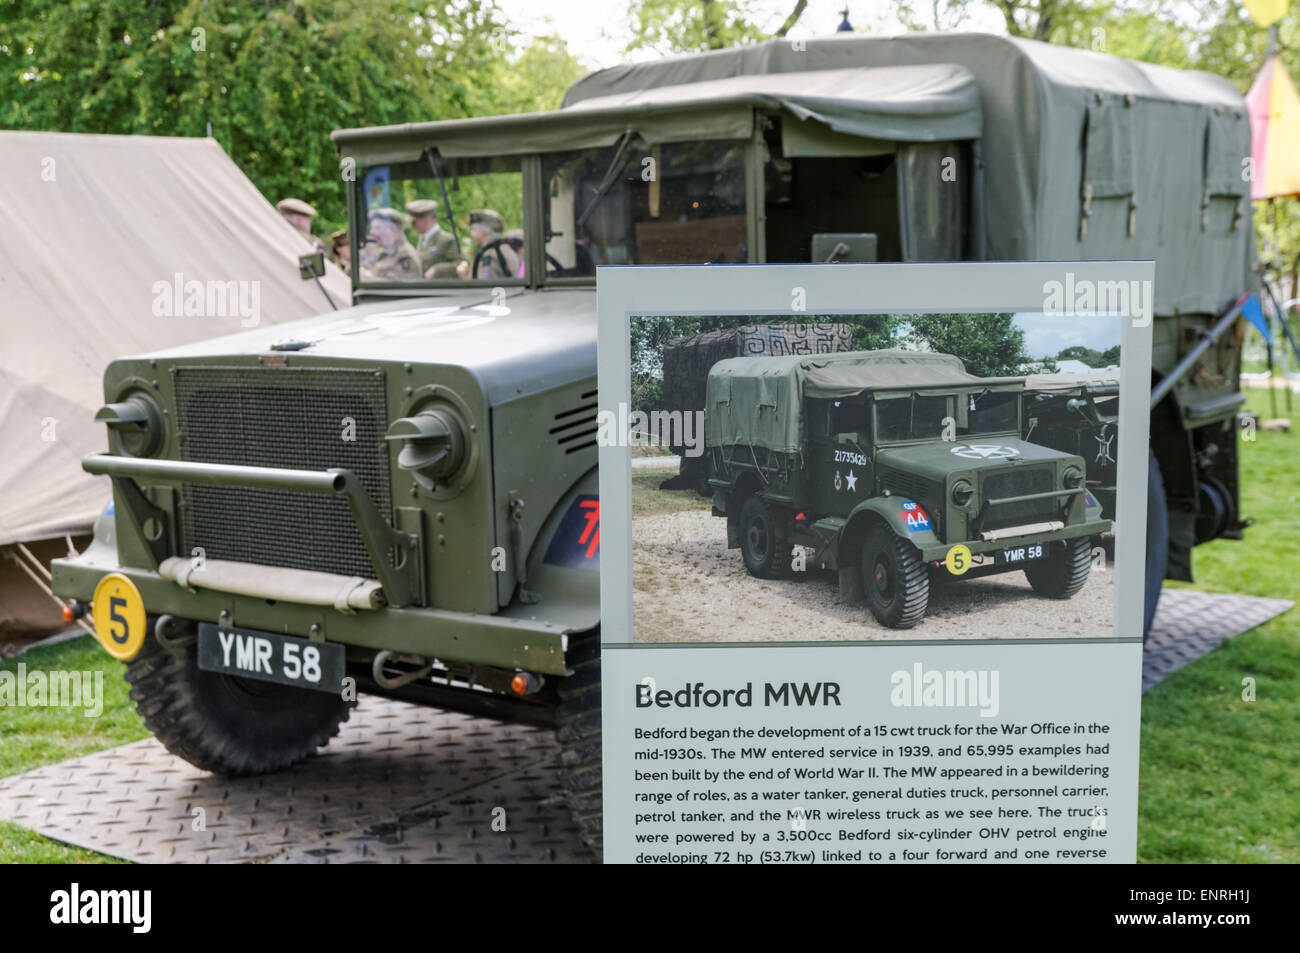 Le Bedford MW un camion de service général utilisé par les Forces armées britanniques pendant la Seconde Guerre mondiale. Ici sur l'exposition de matériel de guerre Banque D'Images